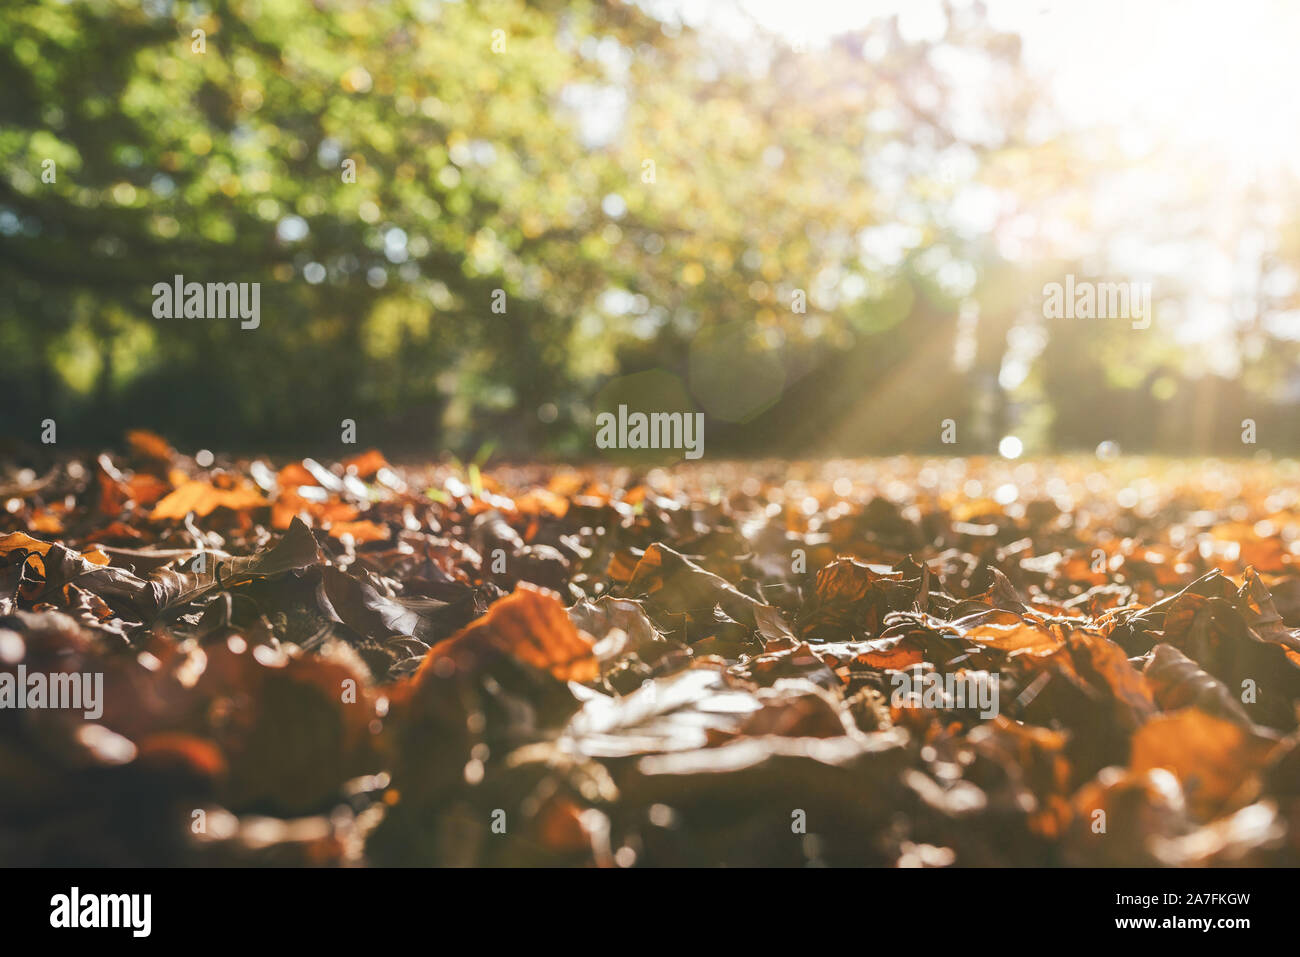 Basso angolo di vista caduto foglie di autunno sul terreno nei confronti di verdi alberi in presenza di luce solare Foto Stock